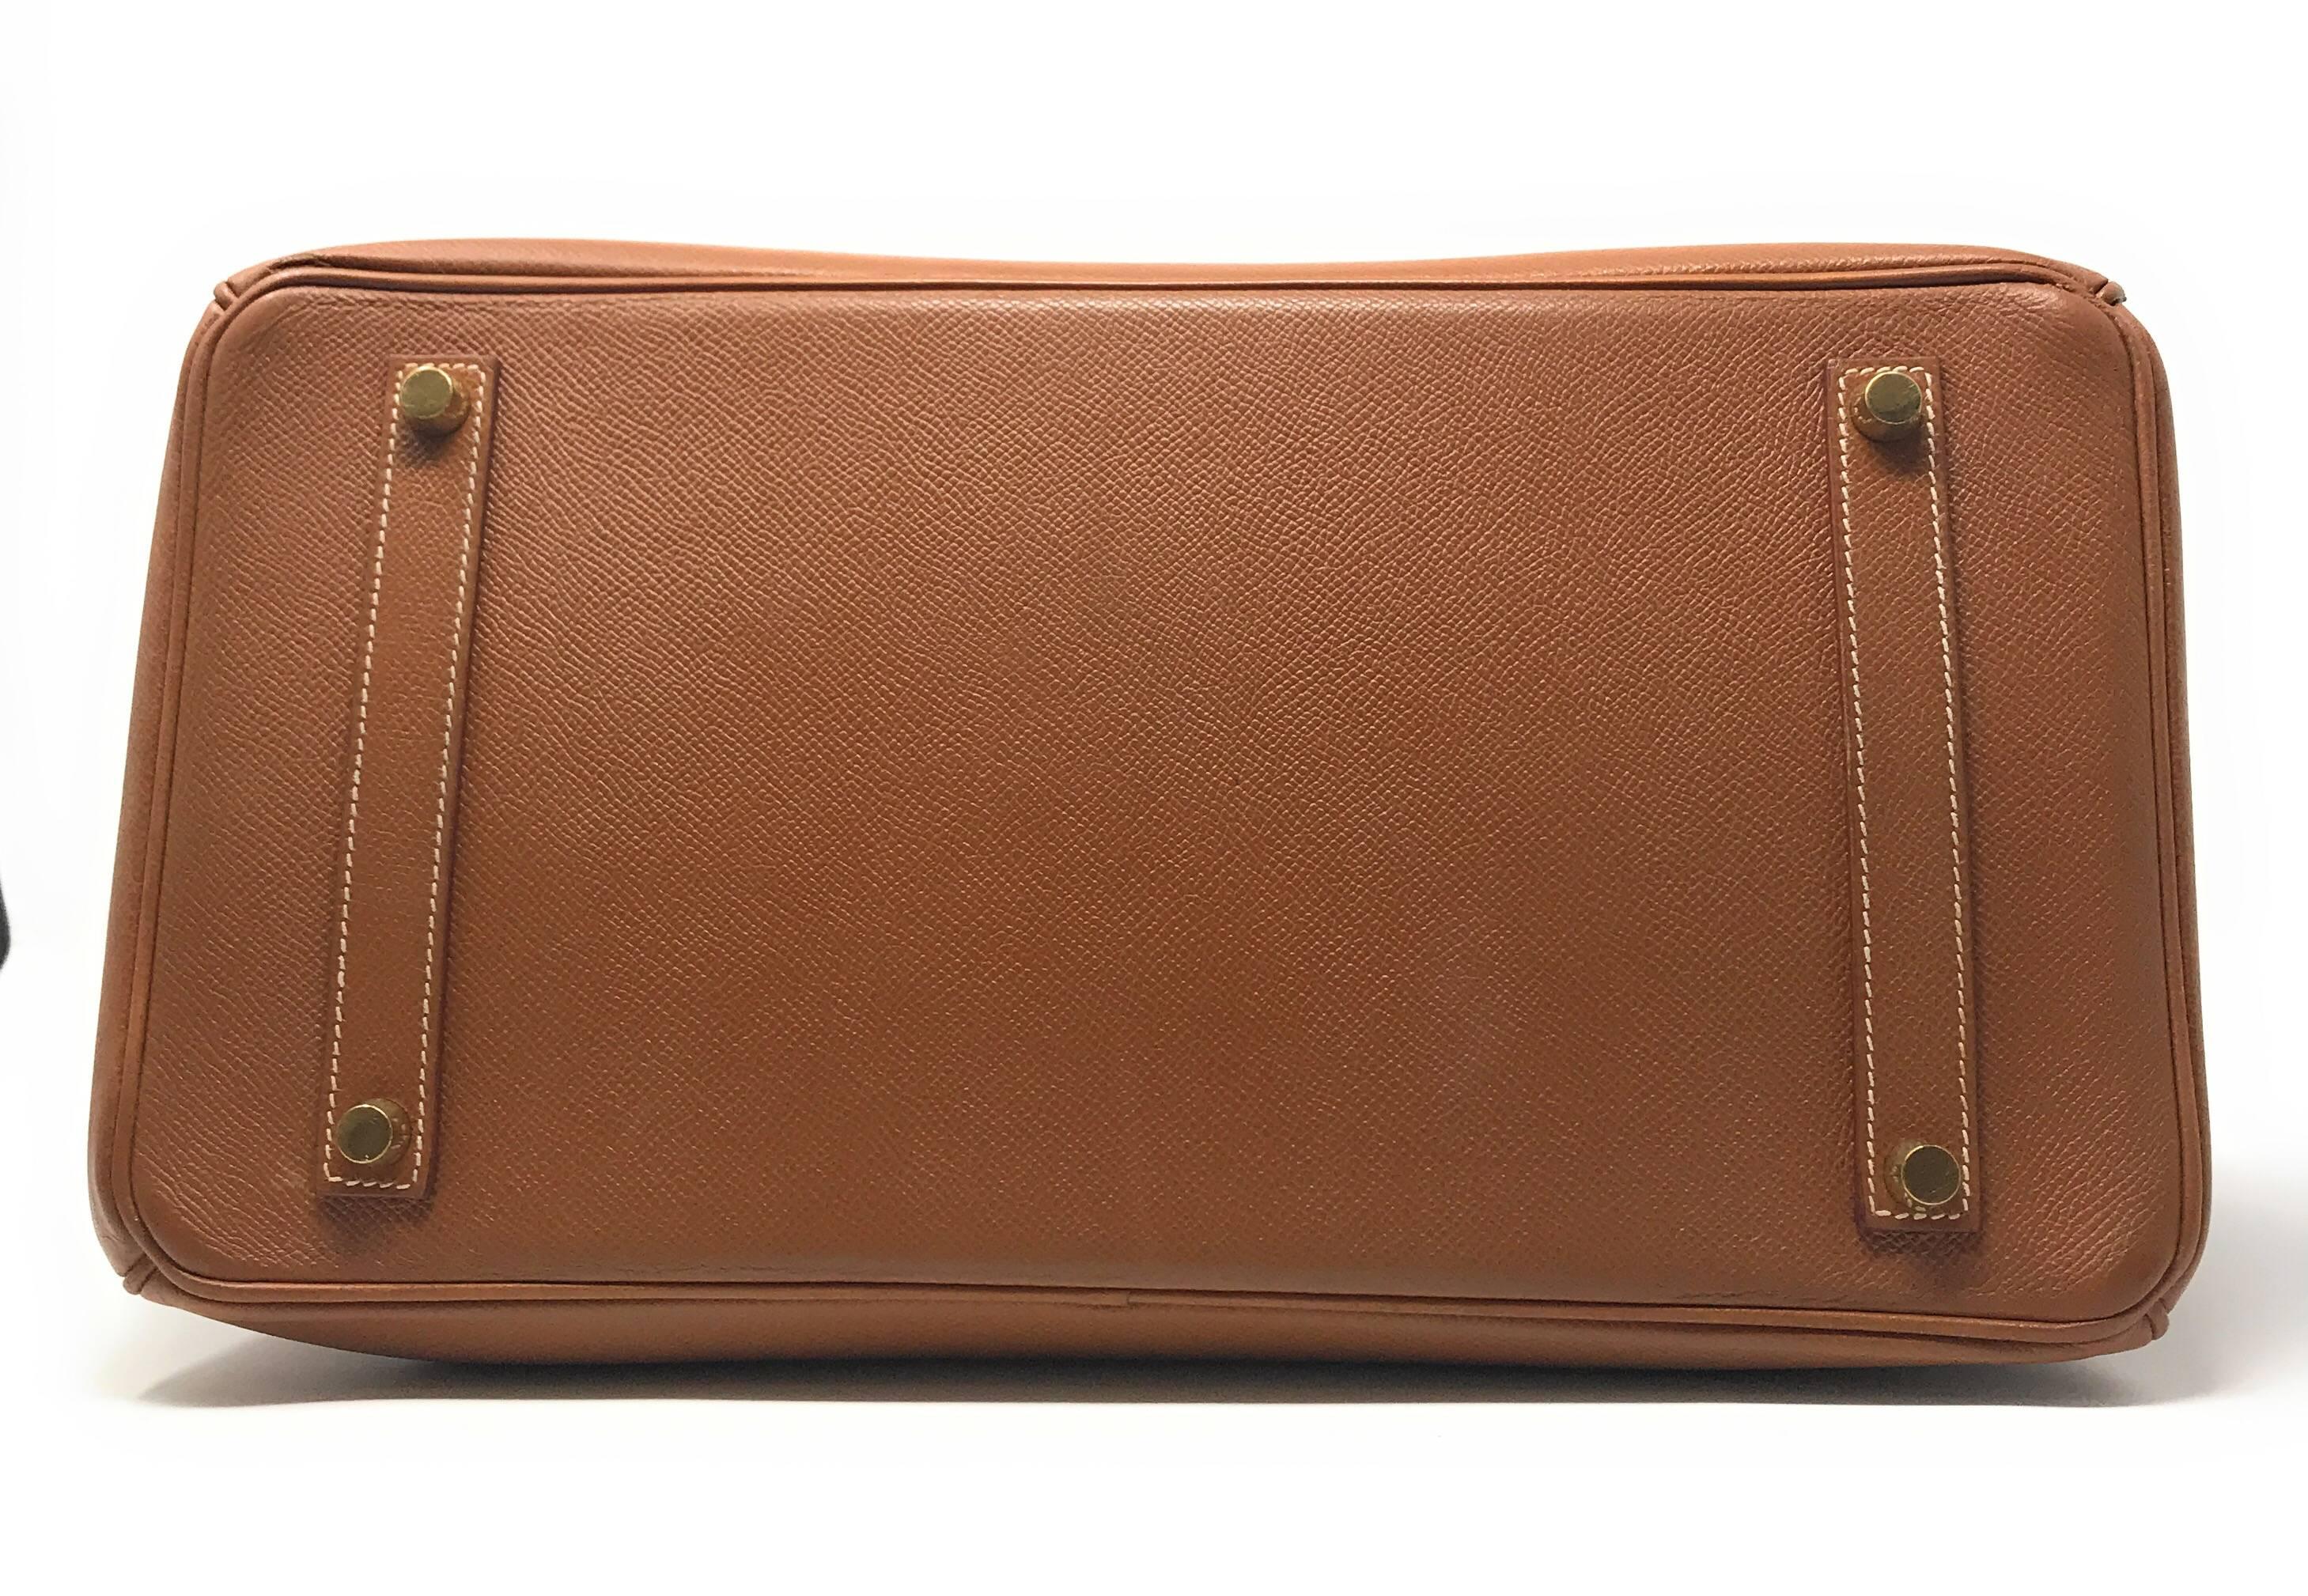 Hermes Birkin 35cm Gold Bag For Sale 2